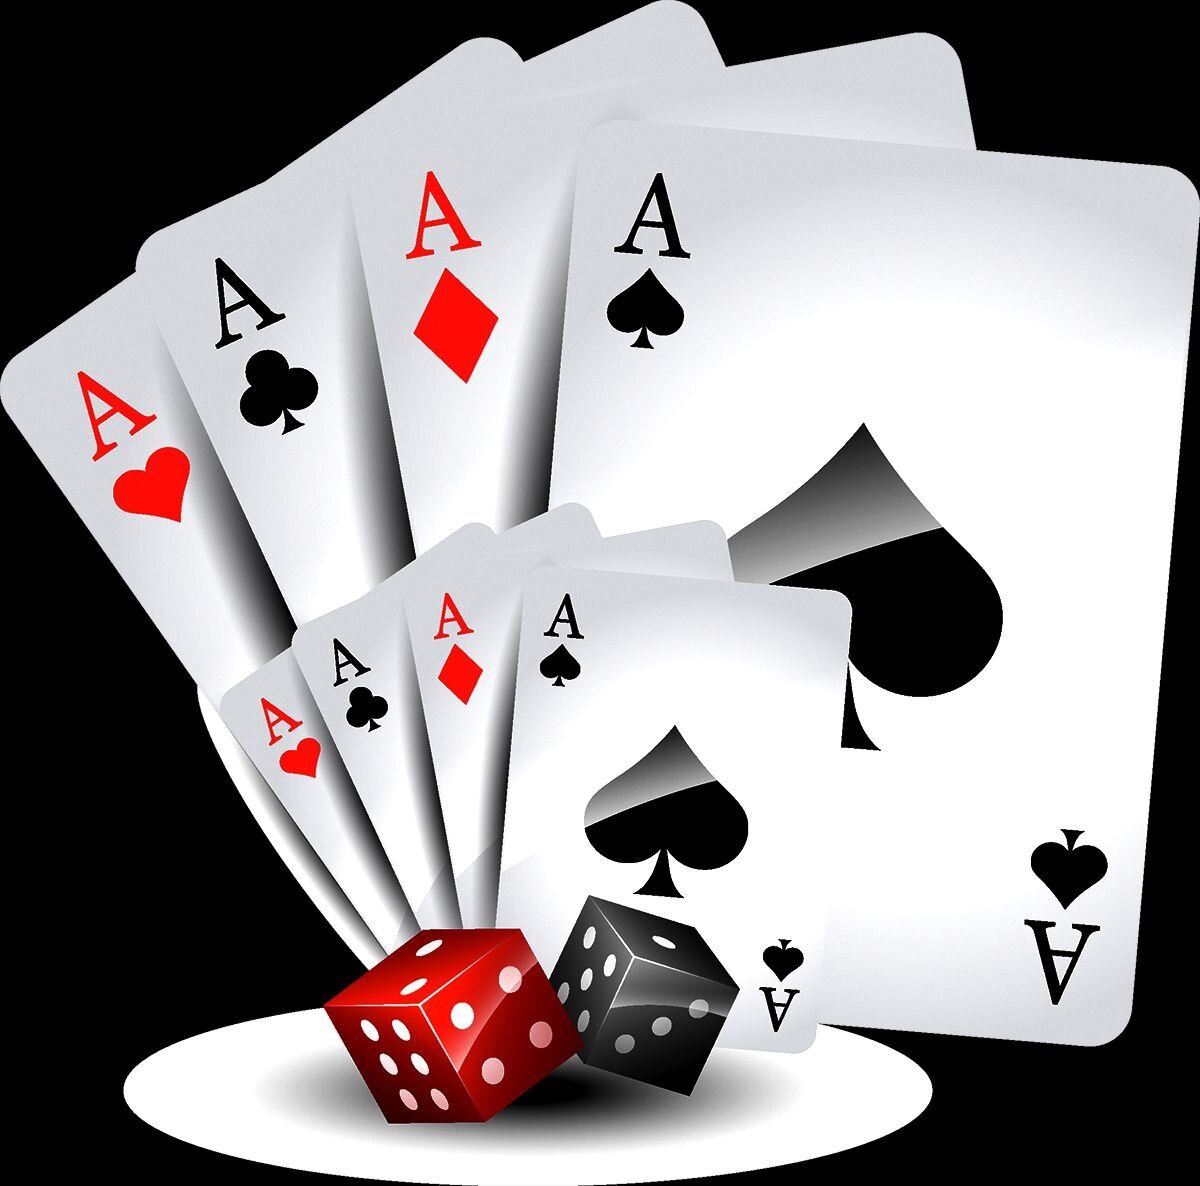 Cards image. Игральные карты. Карты игровые. Покерные карты. Карты игральные покерные.